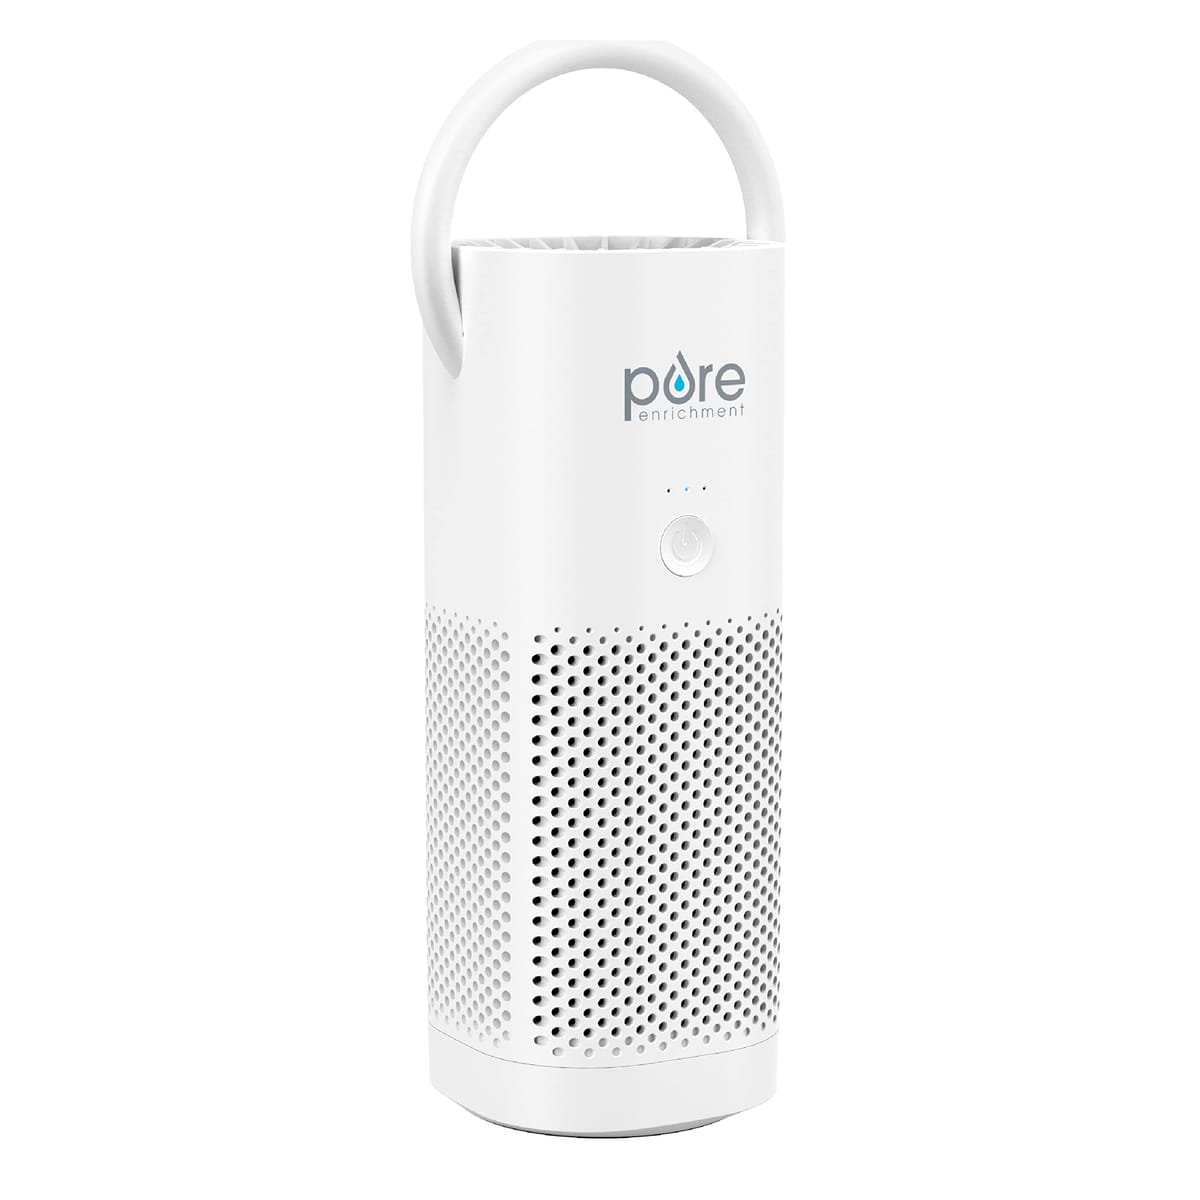 Pure Enrichment (ピュアエンリッチメント) PureZone ミニ ポータブル 空気清浄機 - True HEPAフィルターで空気清浄 アレルギー緩和/煙などの除去をサポート - 旅行/自宅/オフィスでの使用に最適 (ホワイト)